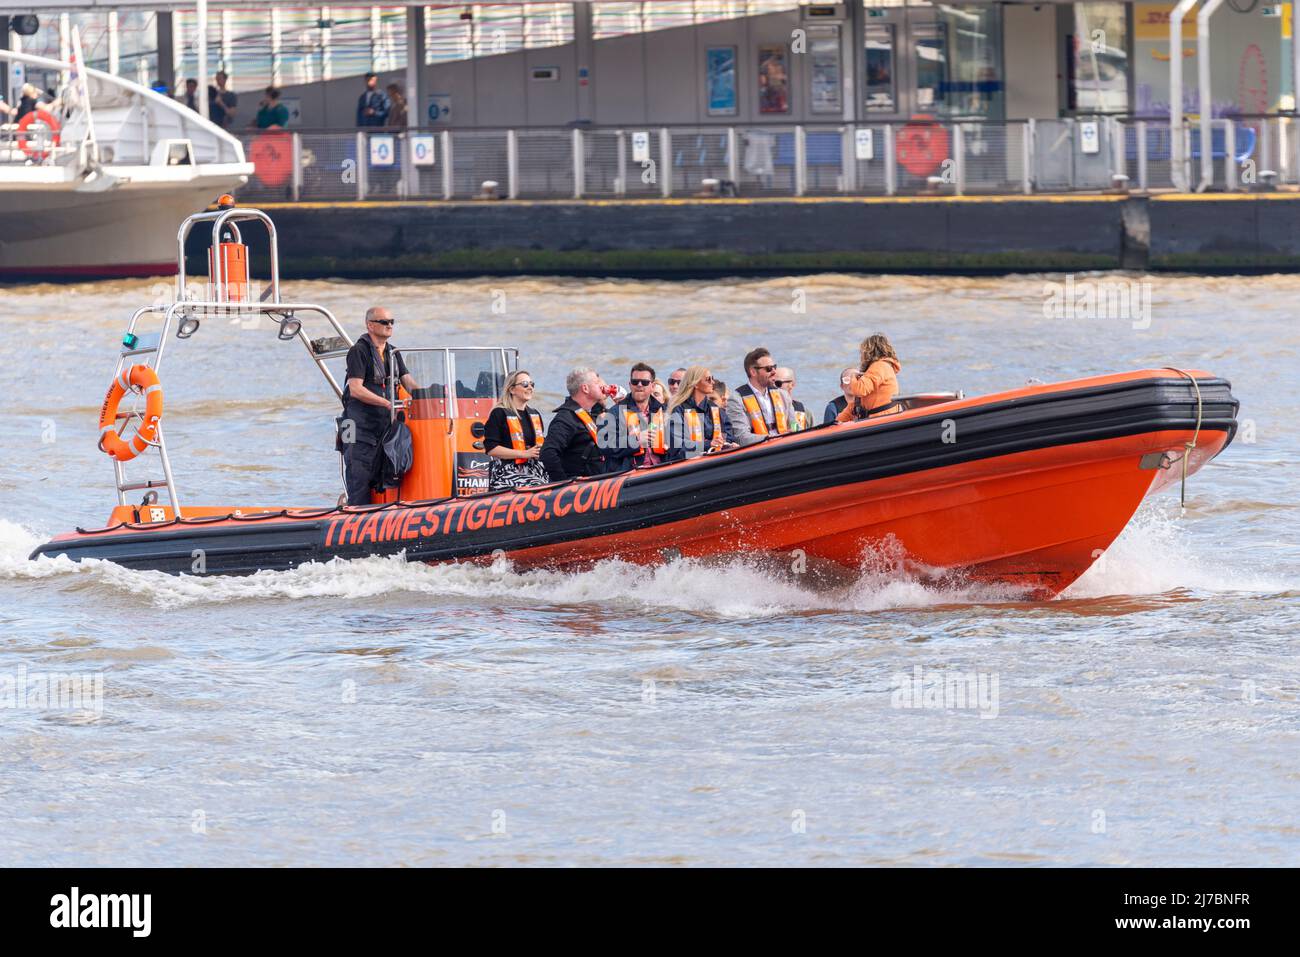 Fahrten mit dem Hochgeschwindigkeitsboot Thames Tigers auf der Themse in London, Großbritannien. Schnellboot Touristenschiff mit Passagieren Stockfoto